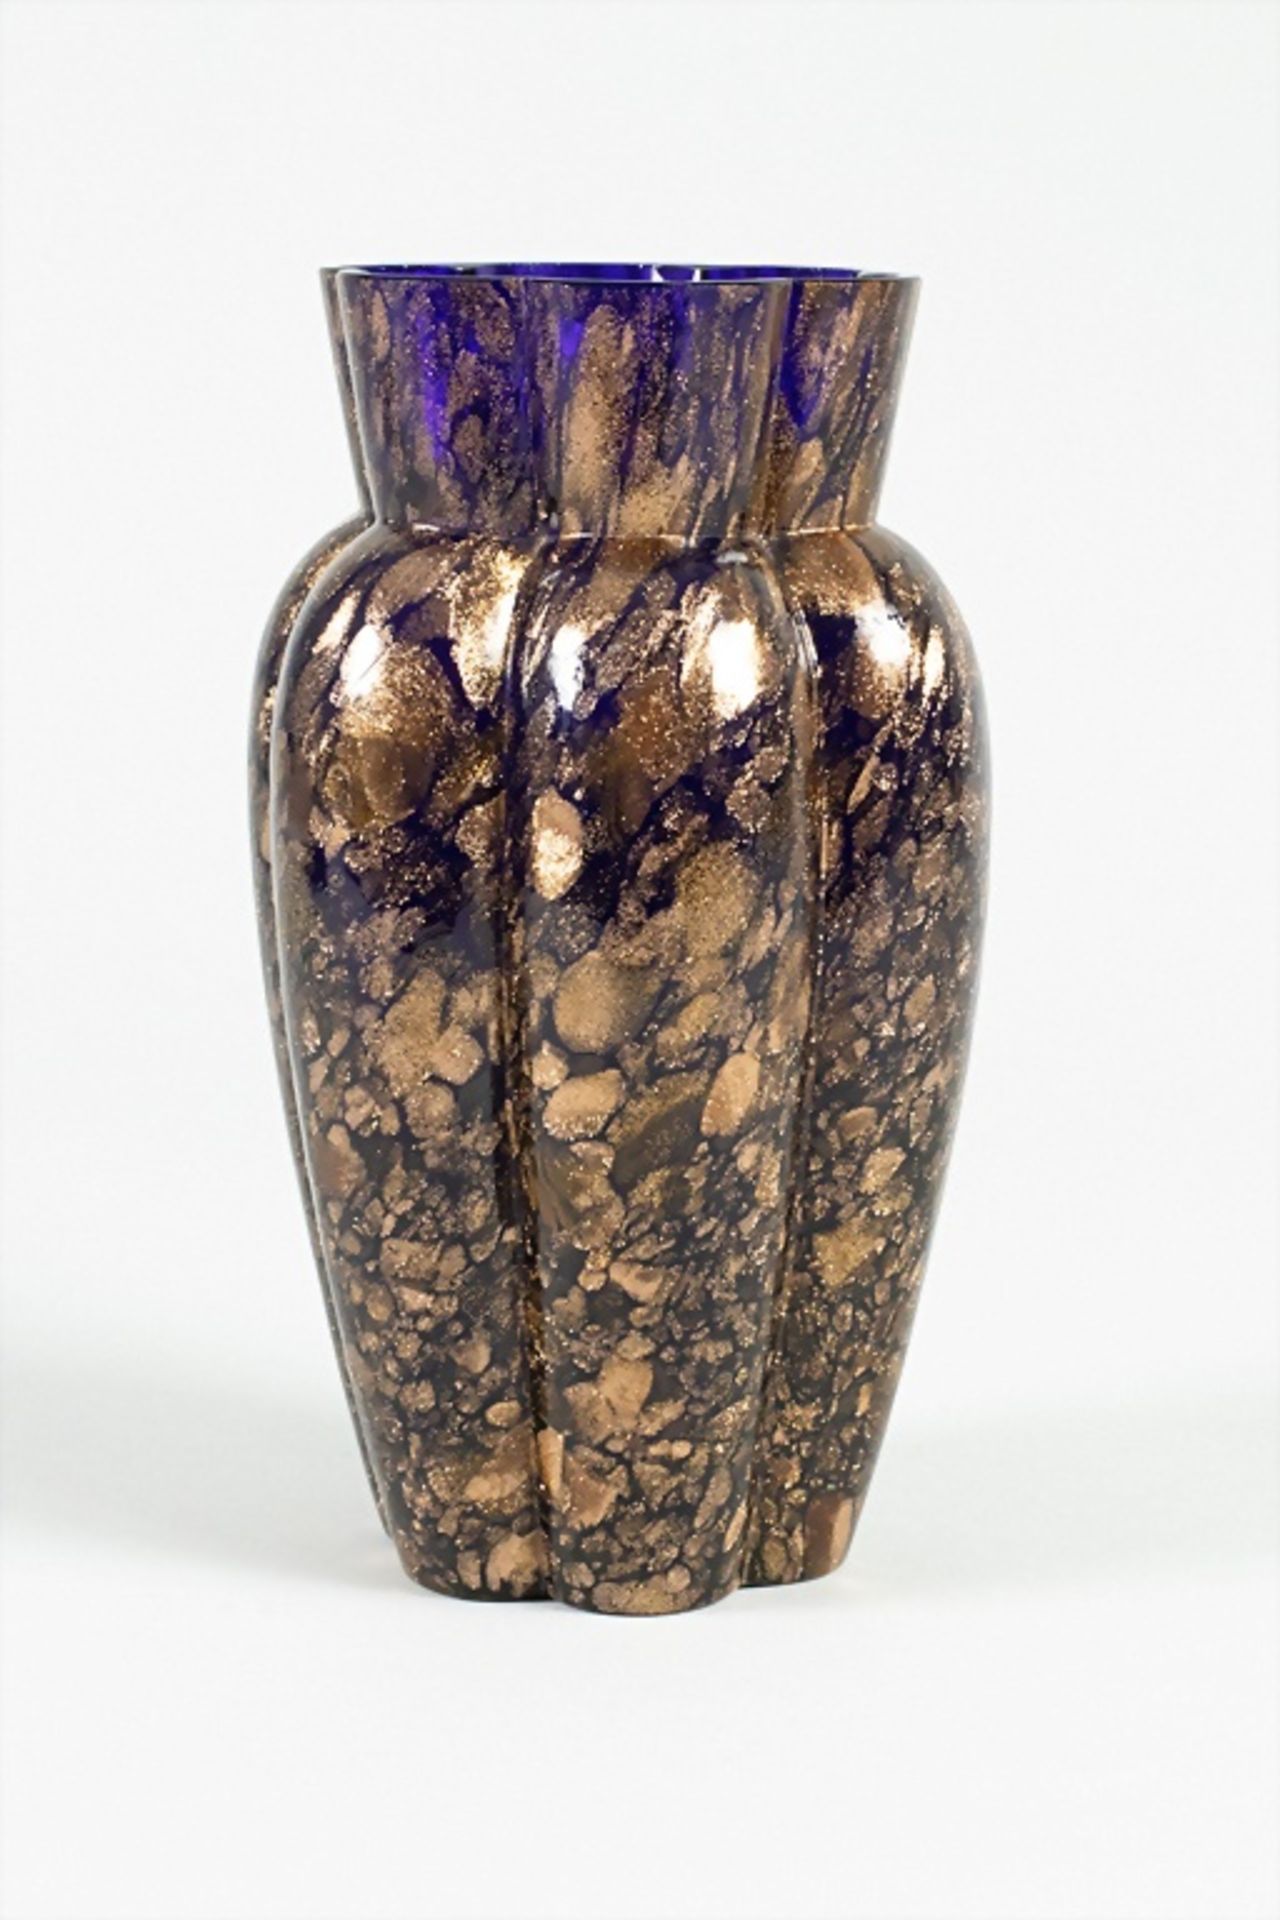 Jugendstil Vase / An Art Nouveau glass vase, Loetz Wwe., Klostermühle, 1905